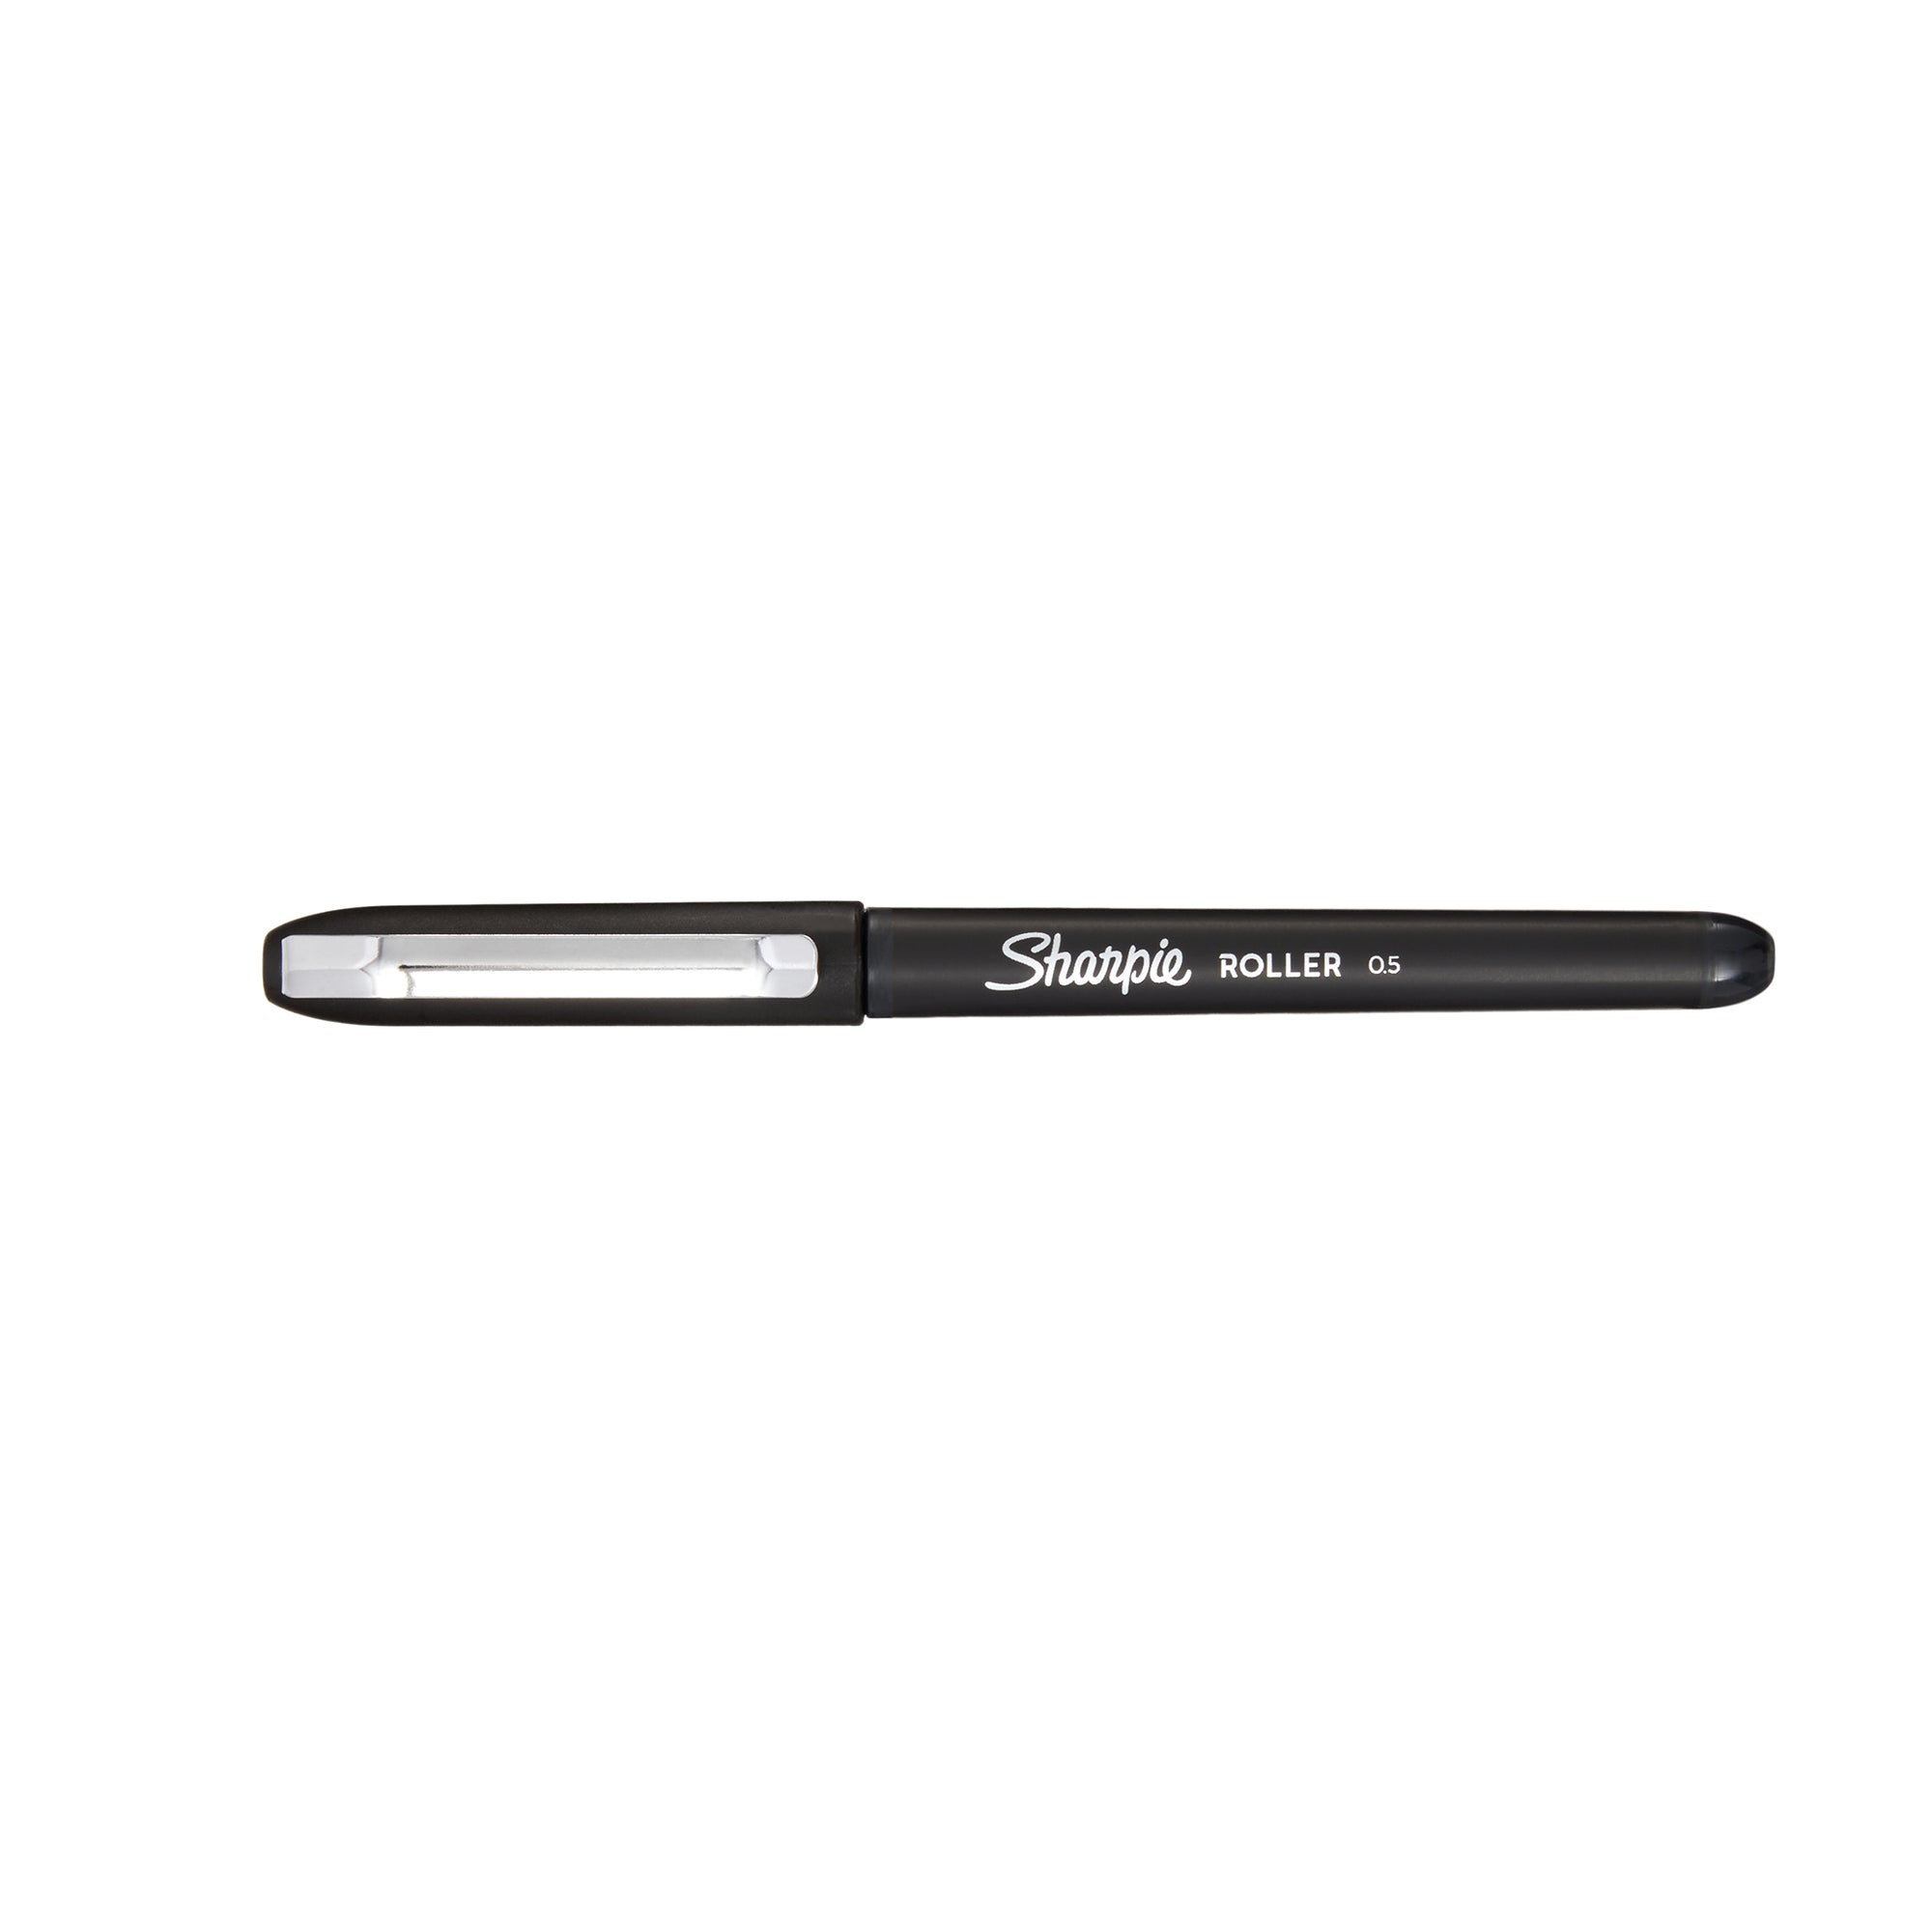 Sharpie Roller Ball Pen Black 0.5Mm 2093200 2Pc Blister